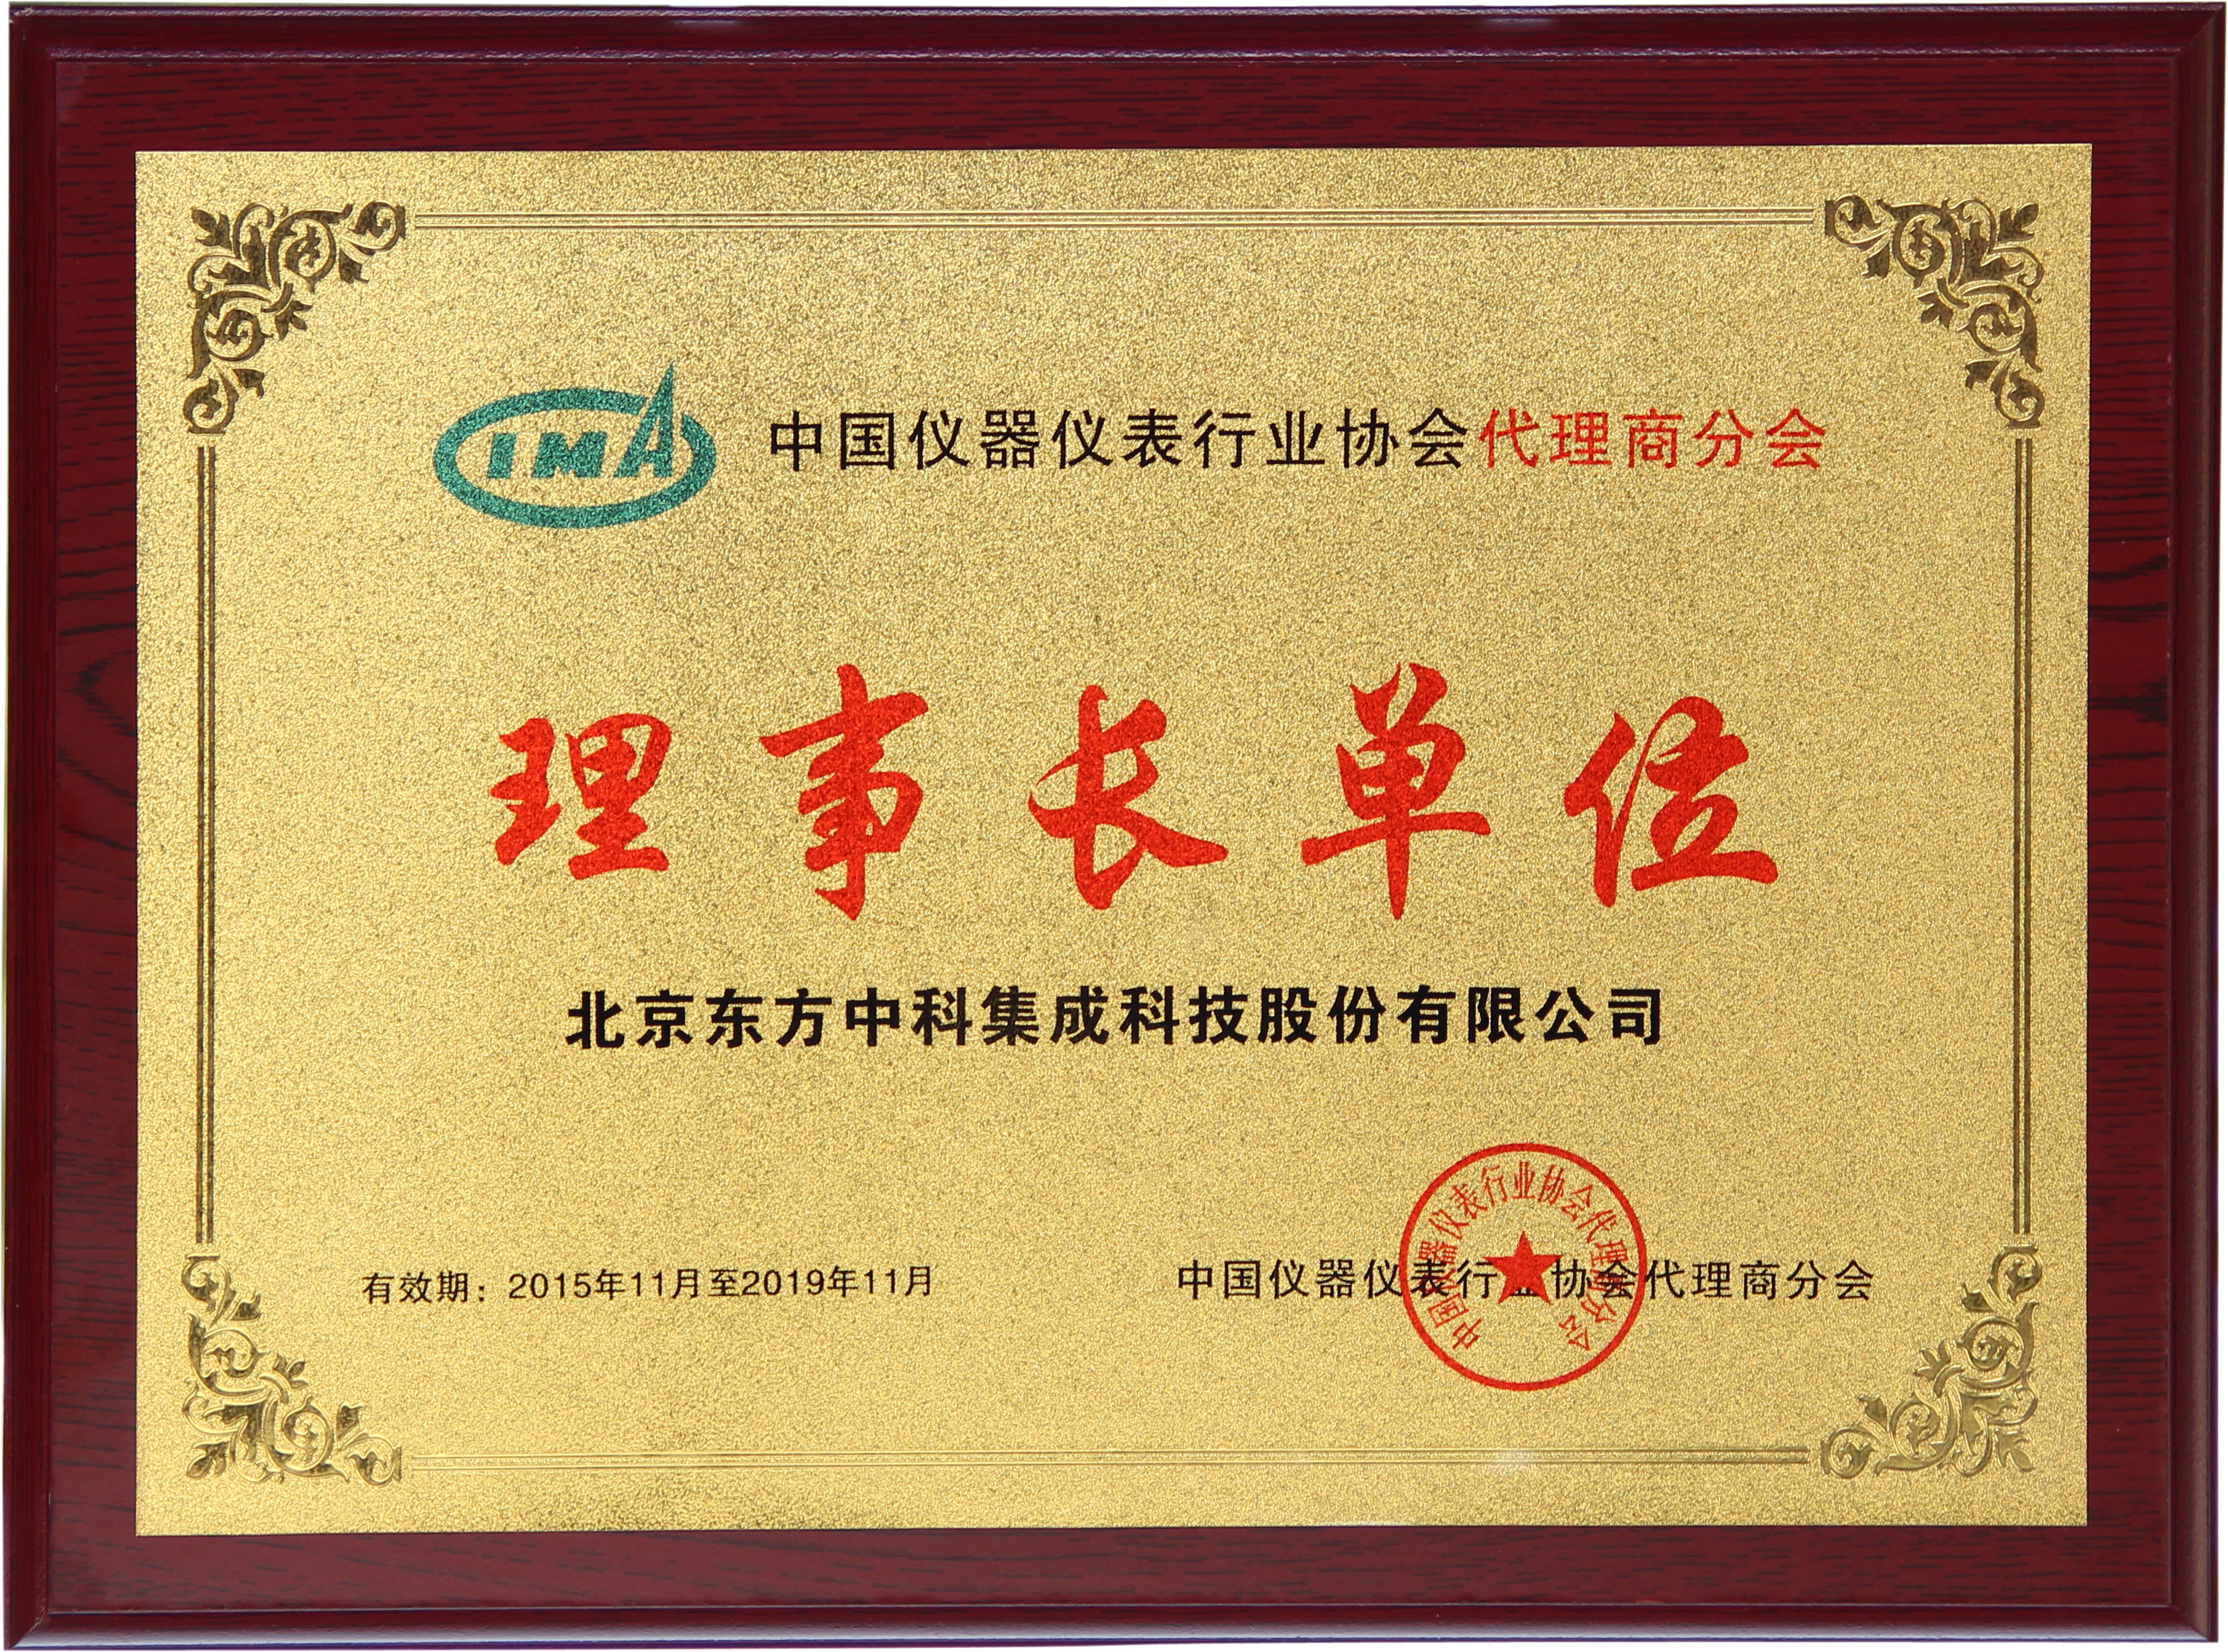 中国仪器仪表行业协会代理商分会理事长单位